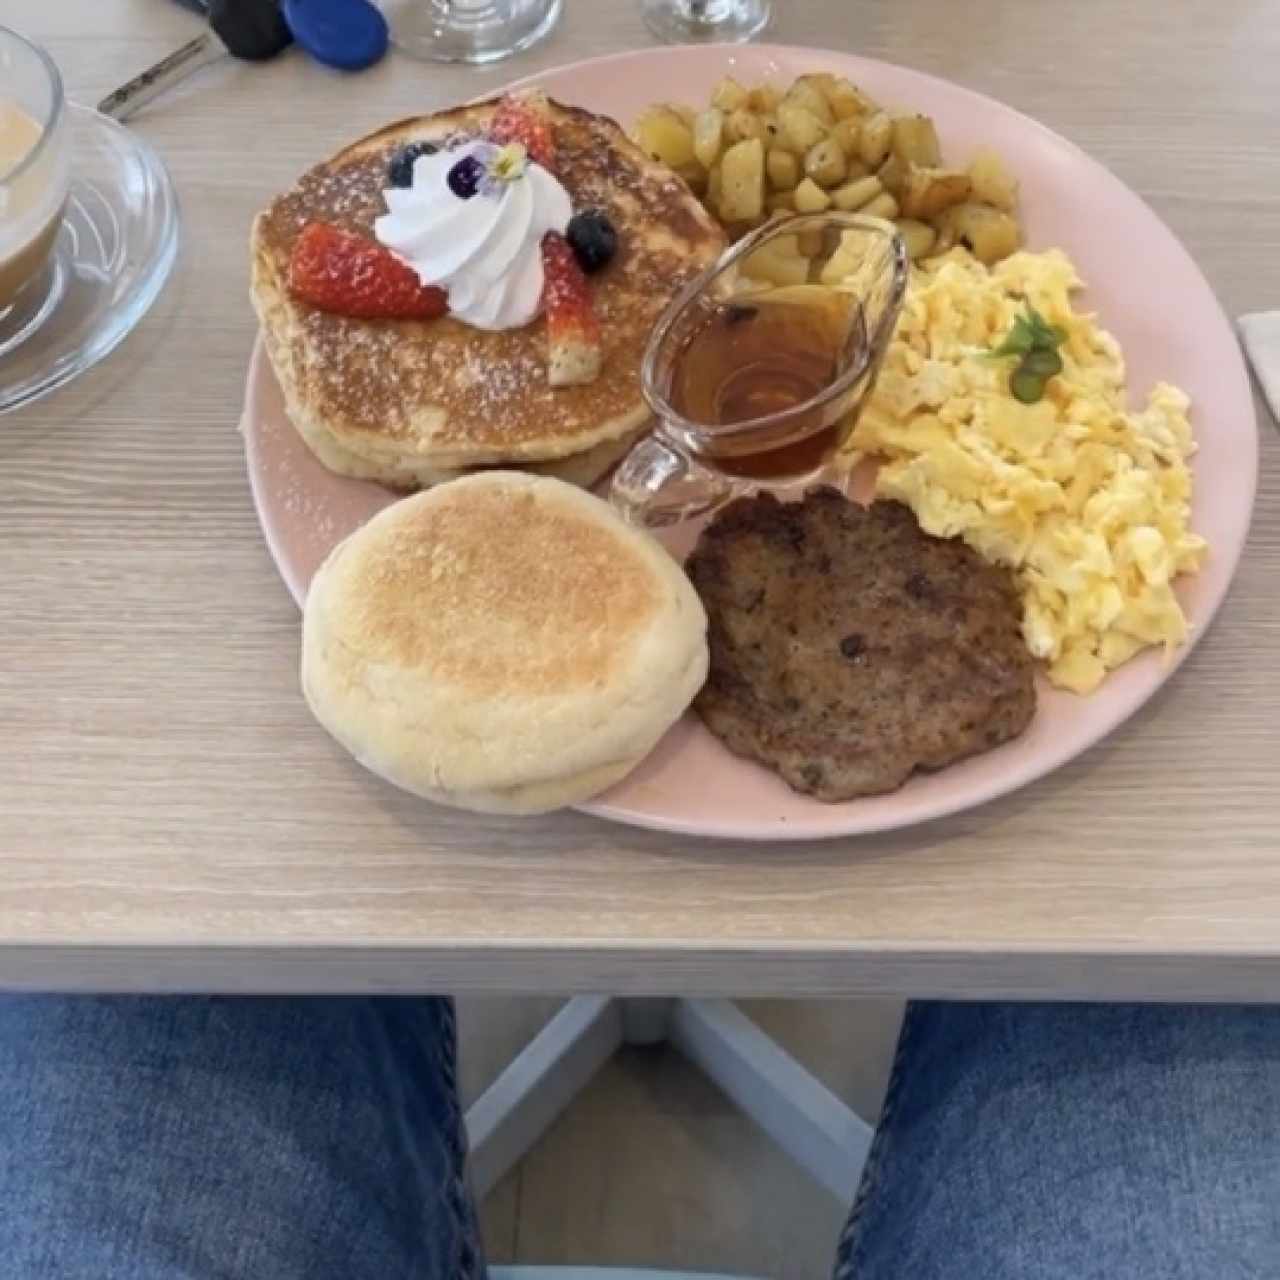 American breakfast 